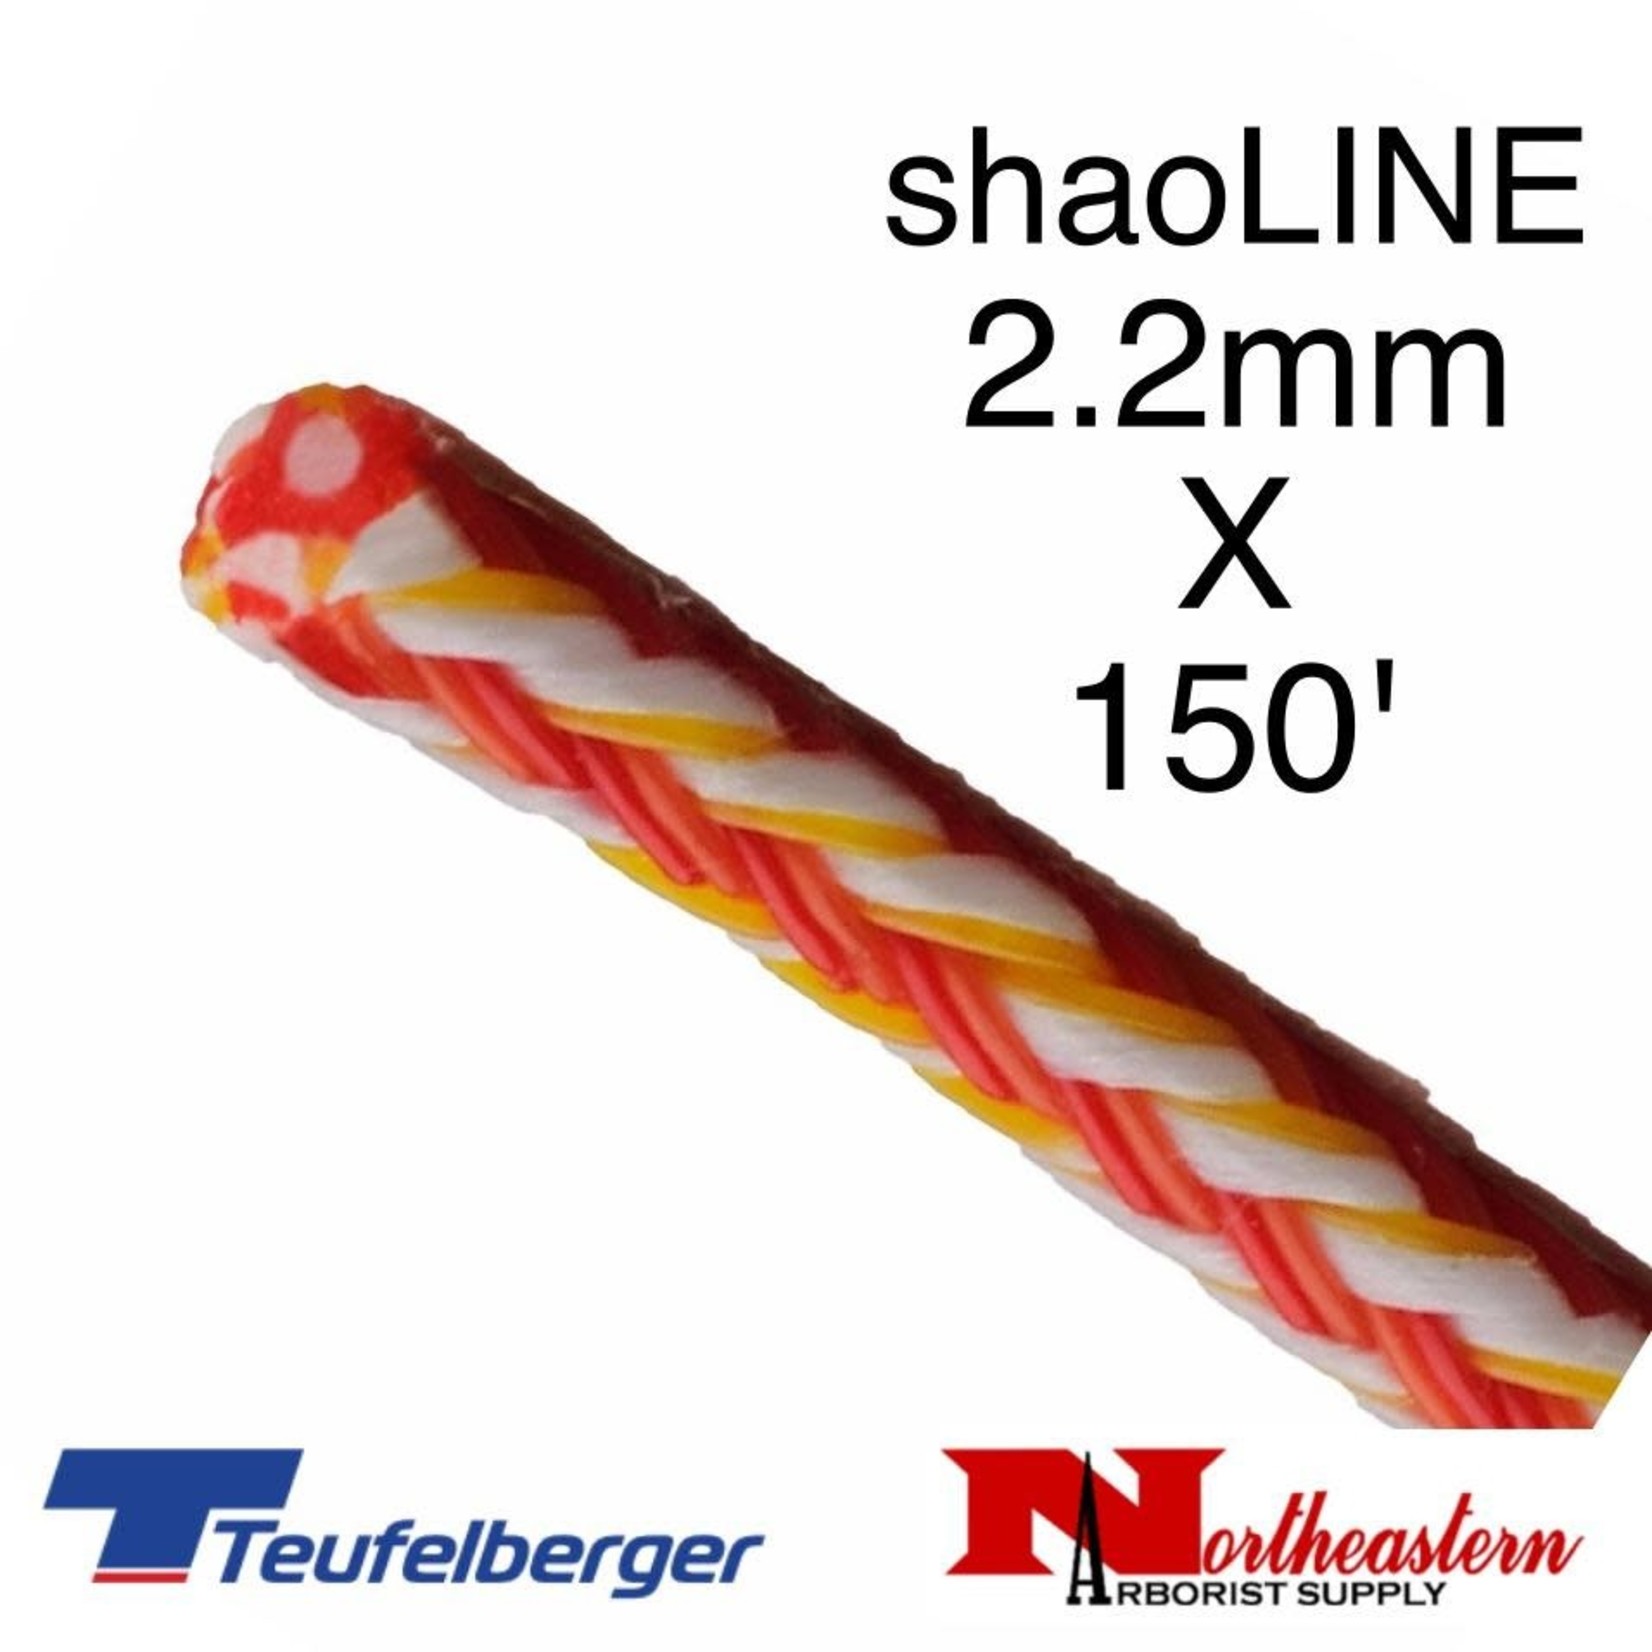 Teufelberger Shaoline Throwline 2.2mm x 150'